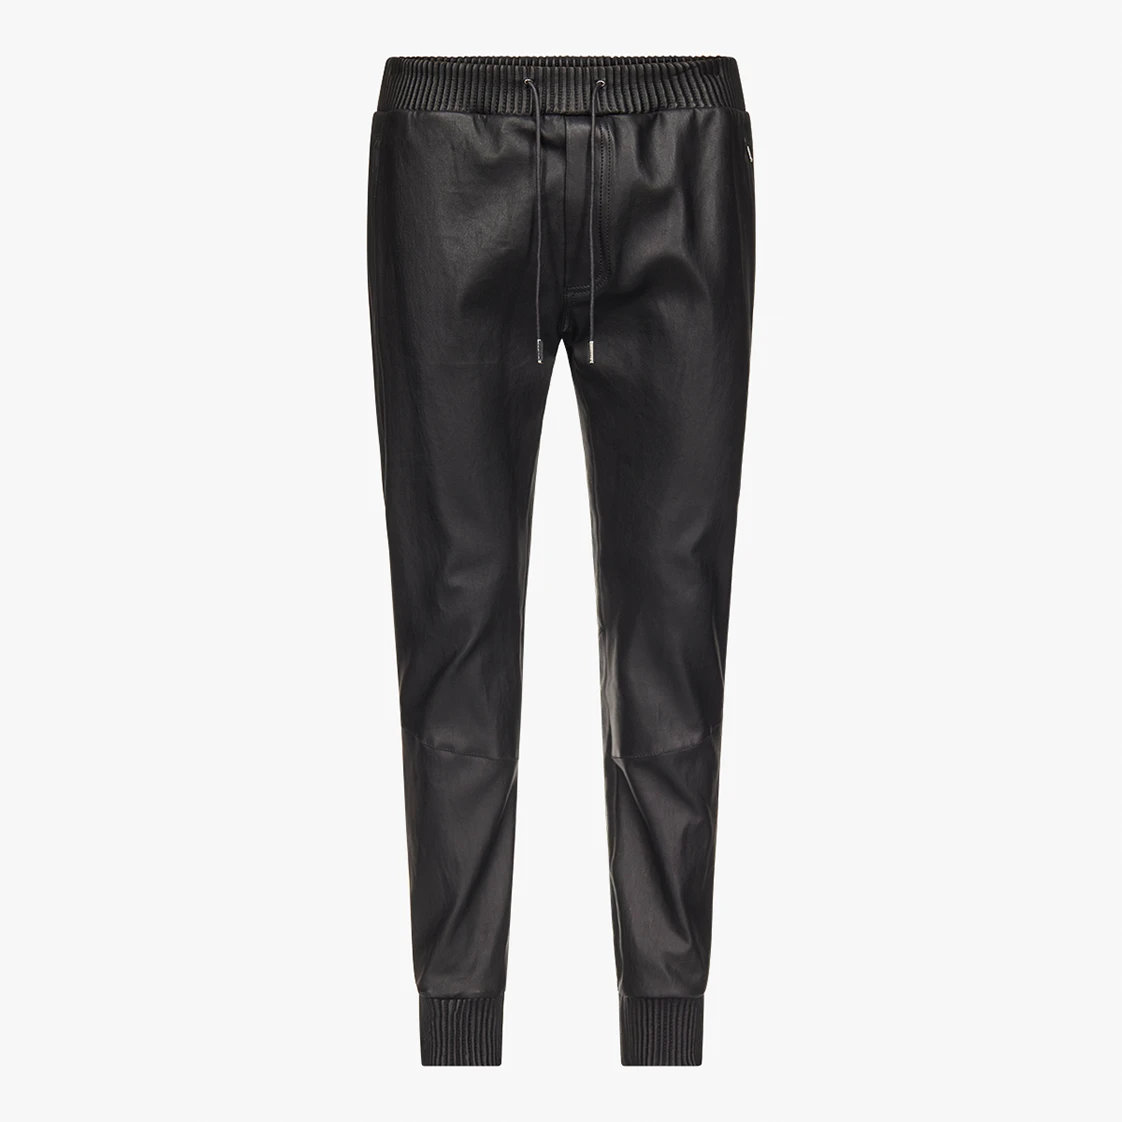 Black stretch leather JOGGING pants - packshot